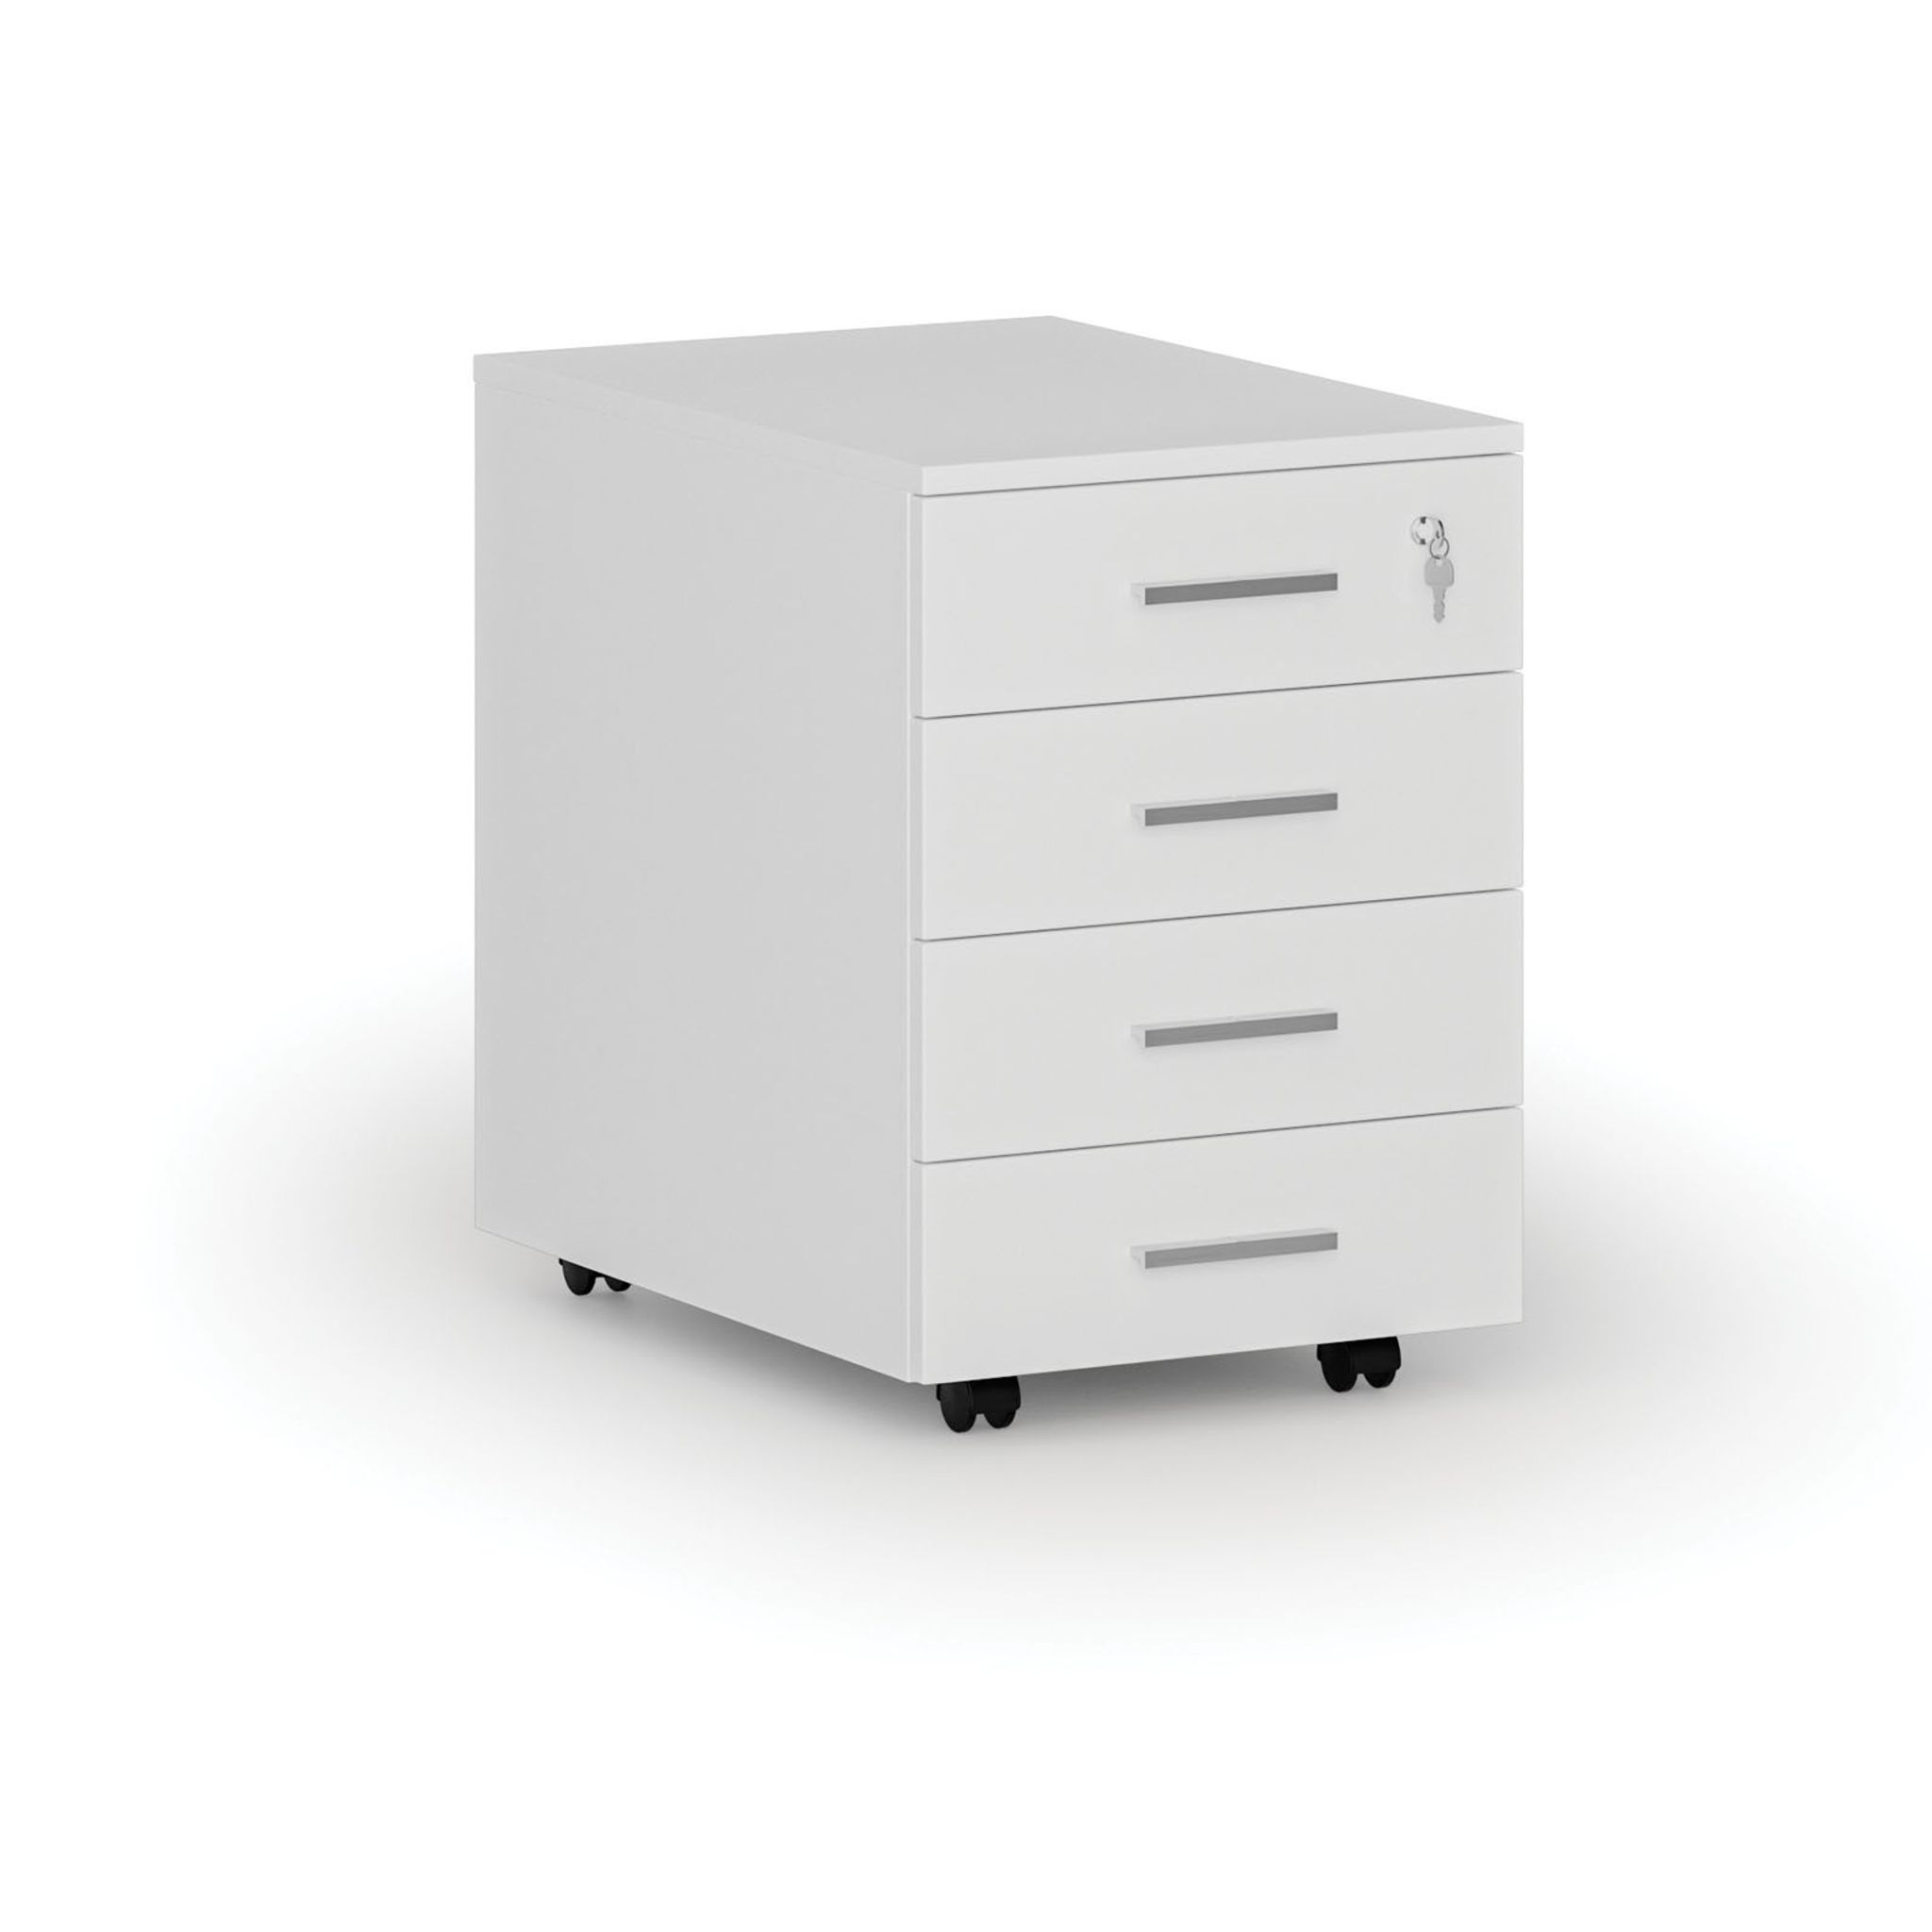 Büro-Rollcontainer PRIMO WHITE, 4 Schubladen, weiß